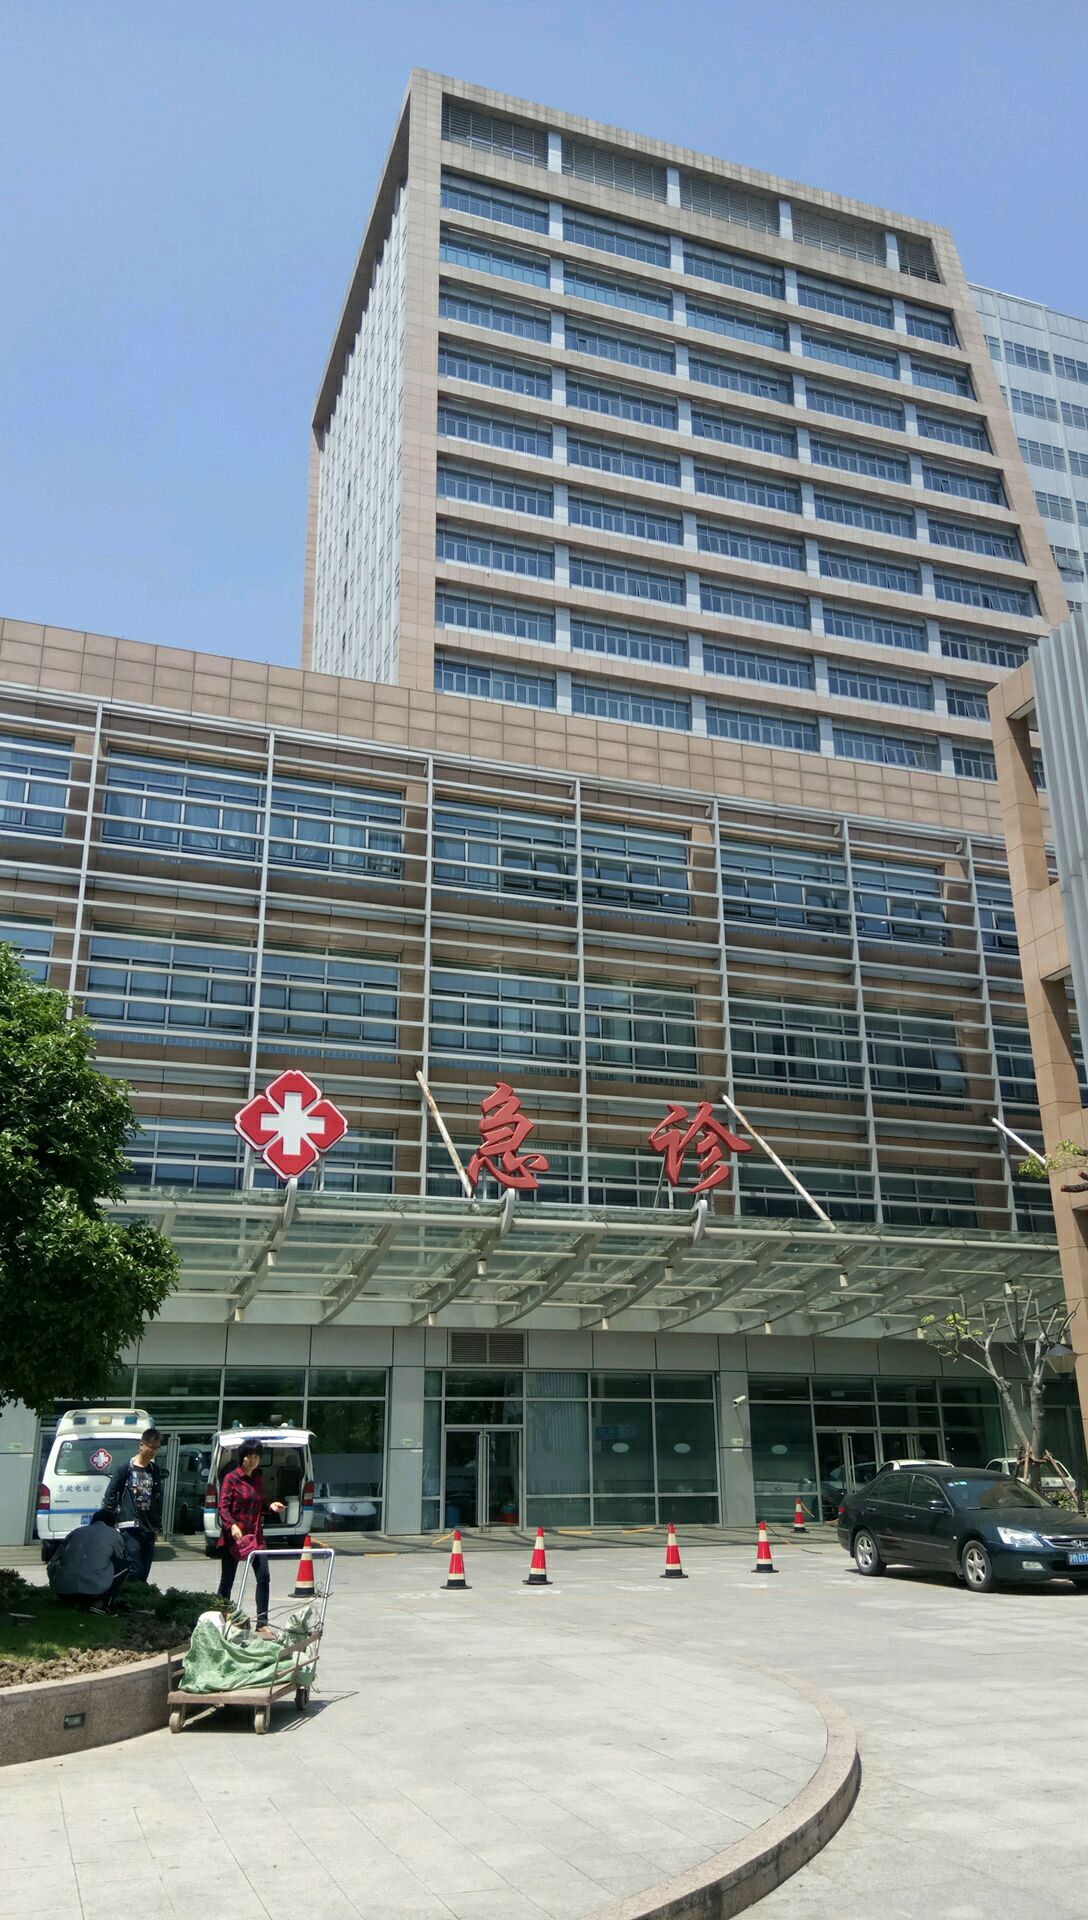 关于上海东方医院医院黄牛挂号，诚信靠谱合理收费的信息